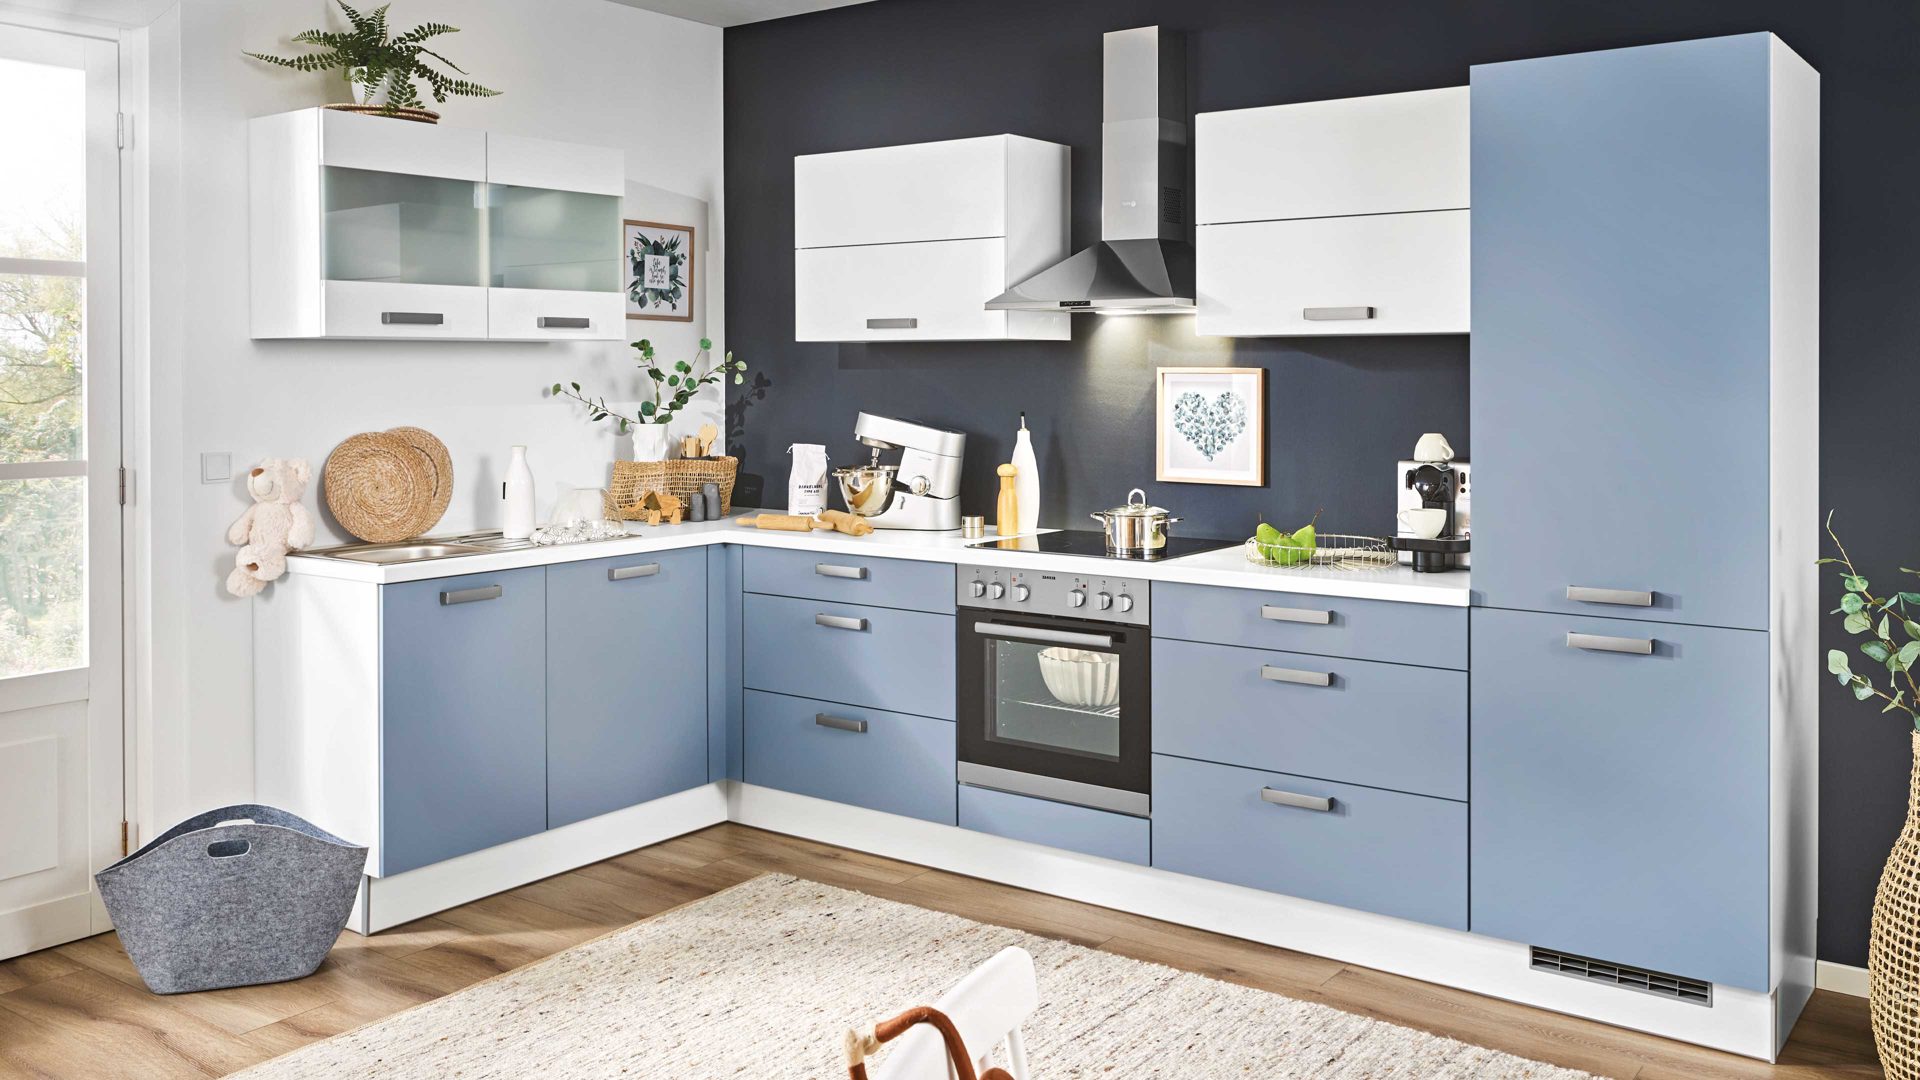 Einbauküche Pino küchen aus Holz in Hellblau pino Einbauküche inklusive ZANKER Einbaugeräte Pastellblau & Weiß - Stellfläche ca. 175 x 347 cm